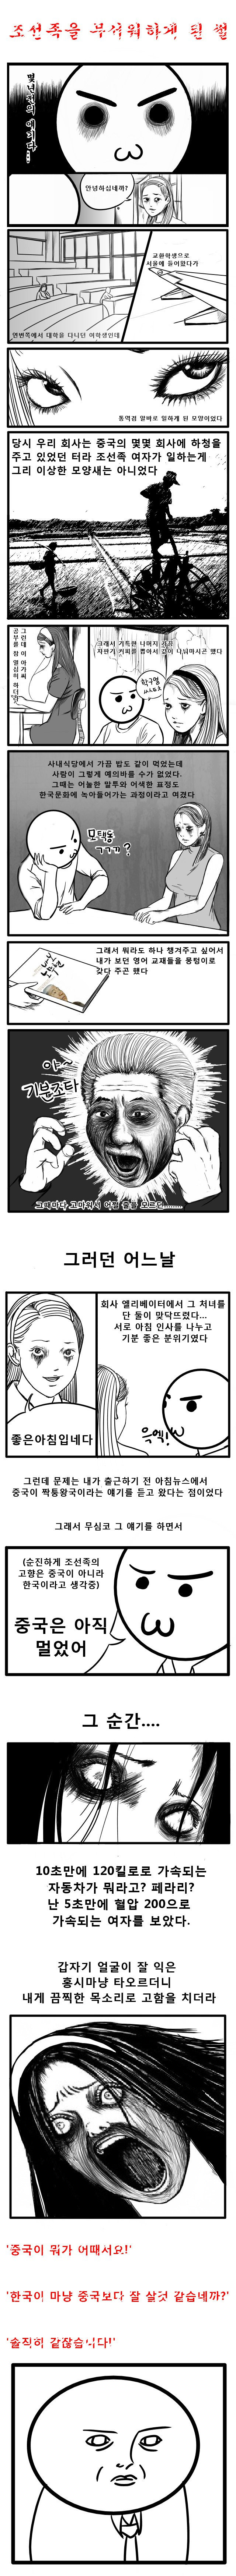 조선족 무서워하게 된 만화개조아 이미지 #1